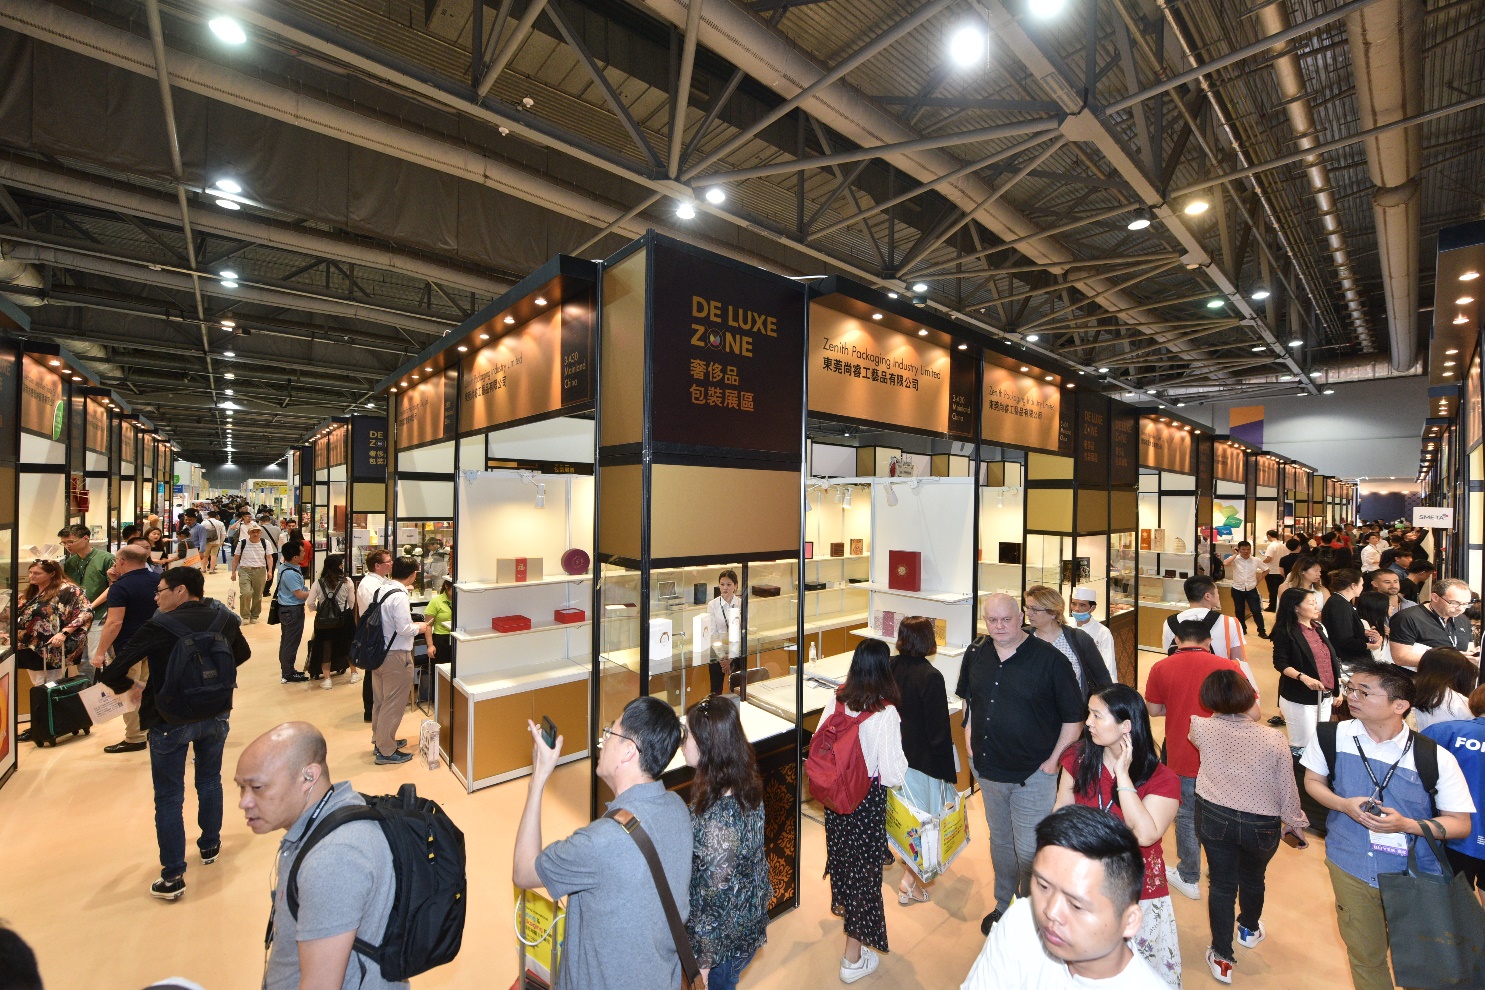 香港貿發局五項時尚產品展四月舉行 「展覽+」線上線下雙軌模式  采購創意產品激發生活靈感